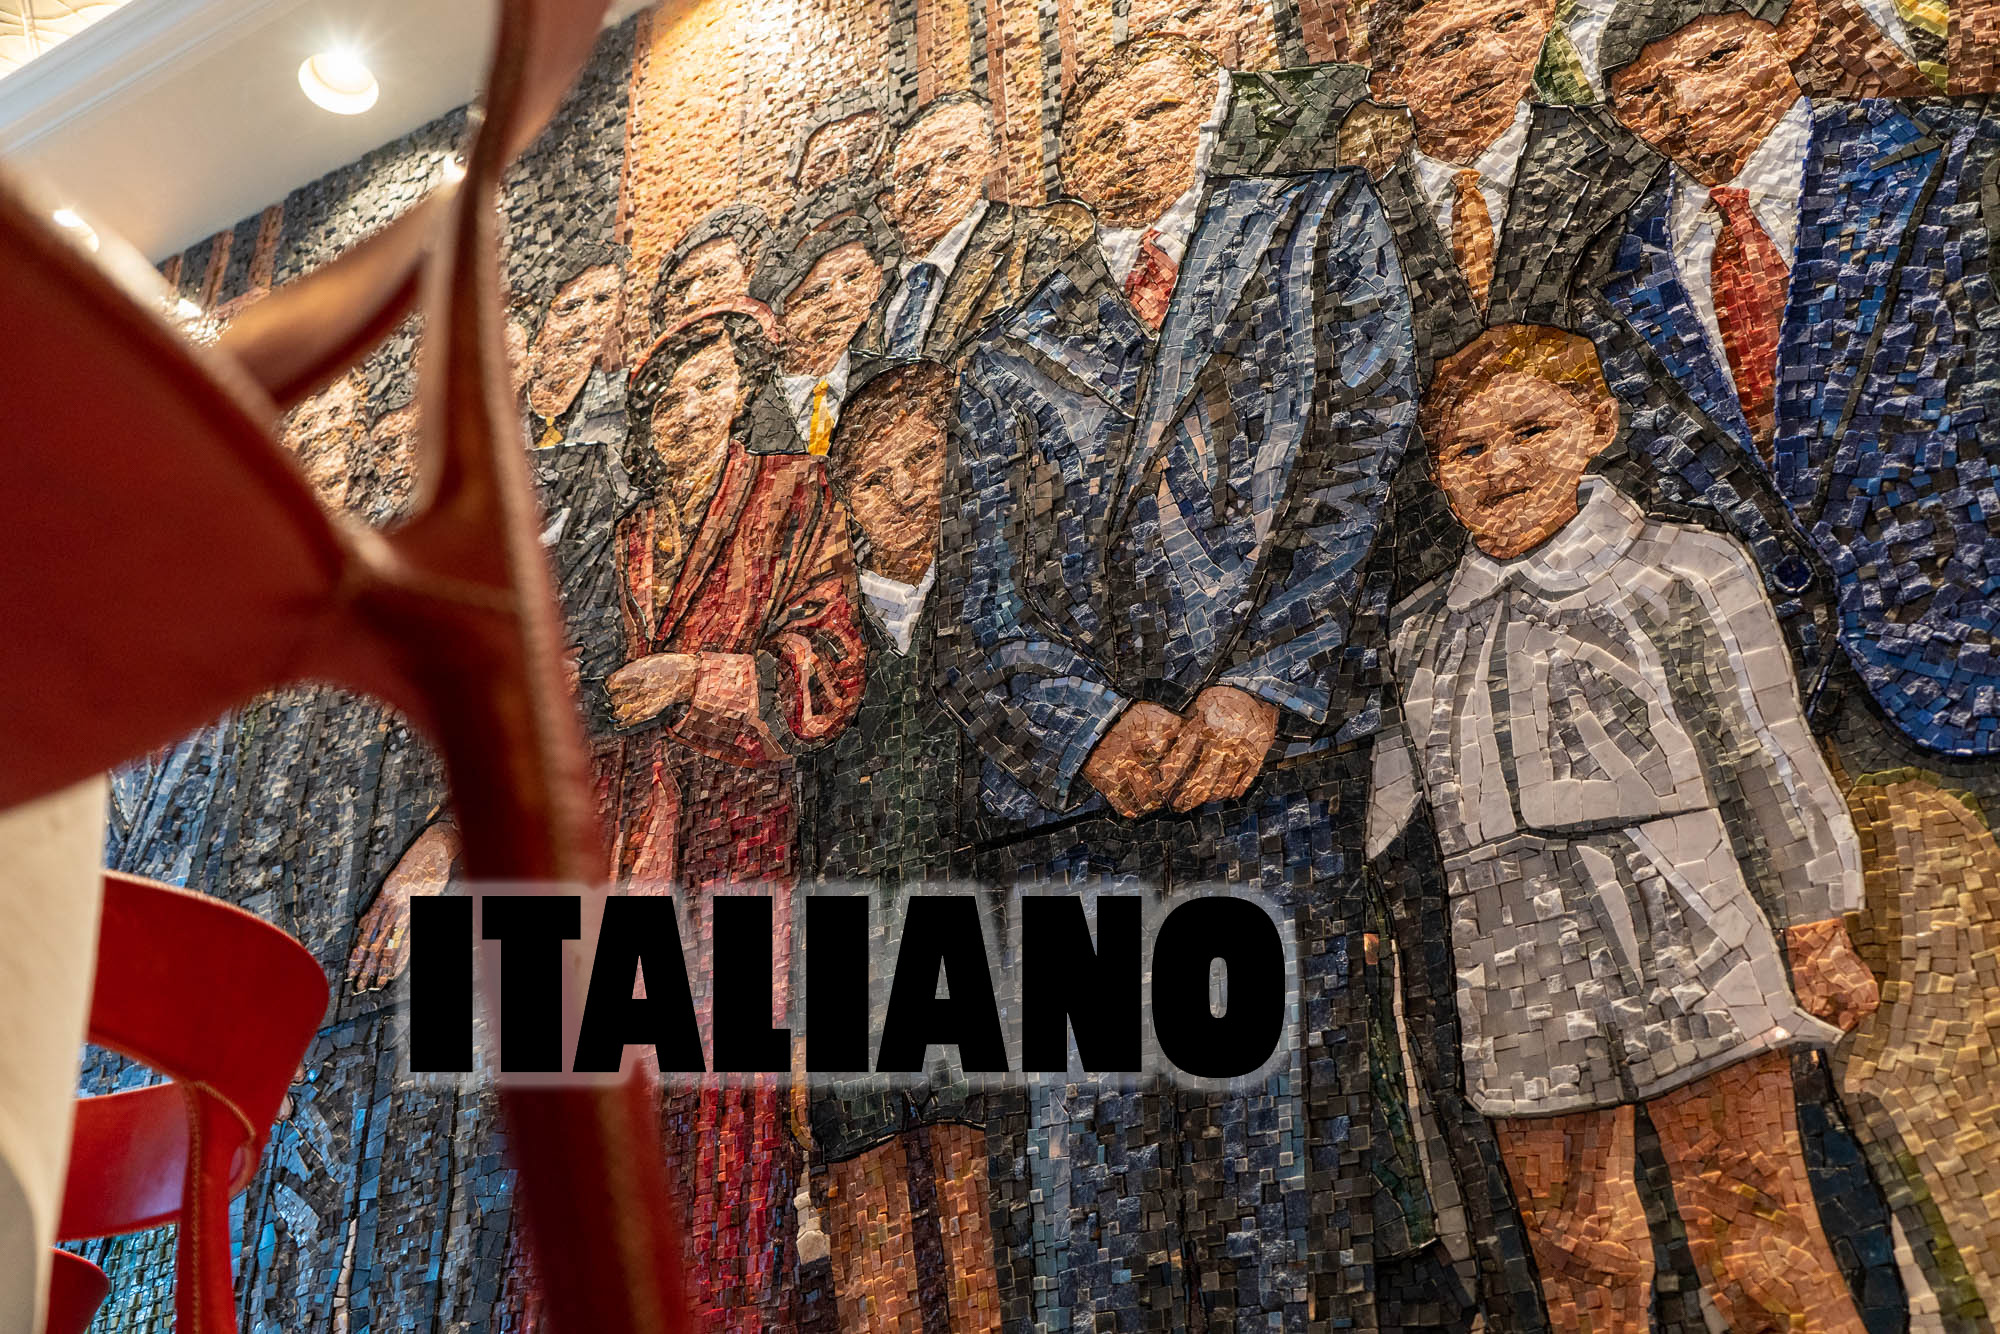 Restaurang Italiano - mosaik på familjen - vägg i restaurangen